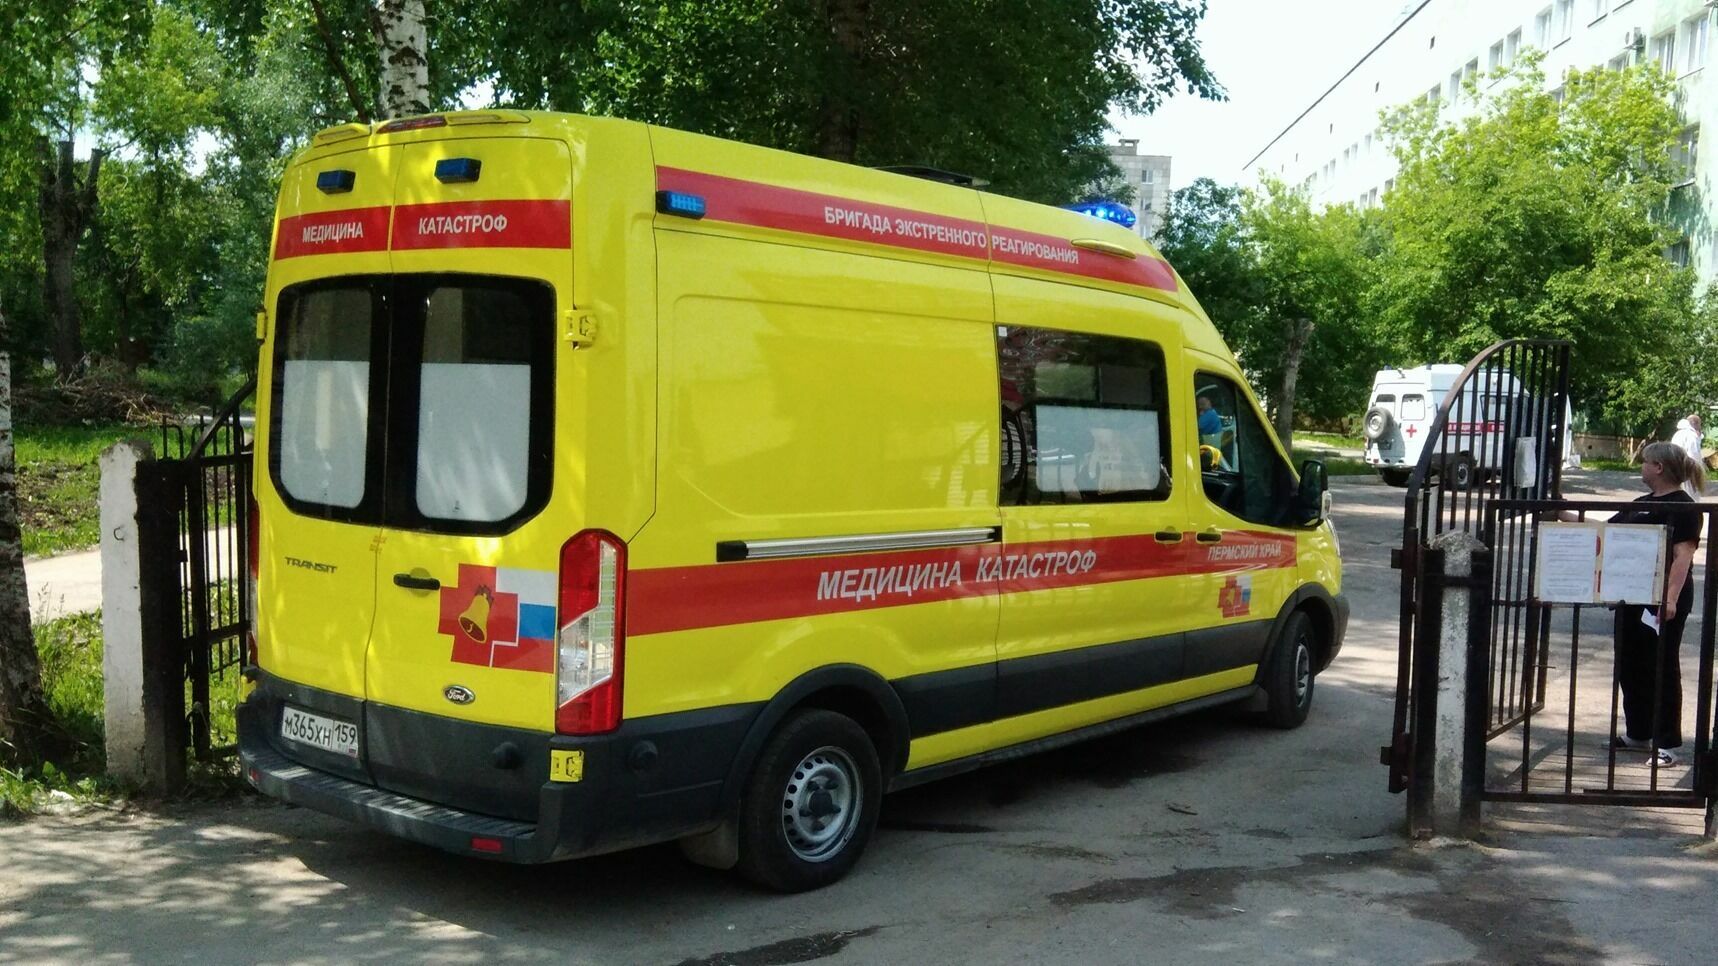 Ждут обследования часами: фоторепортаж из очереди скорых в пермскую больницу